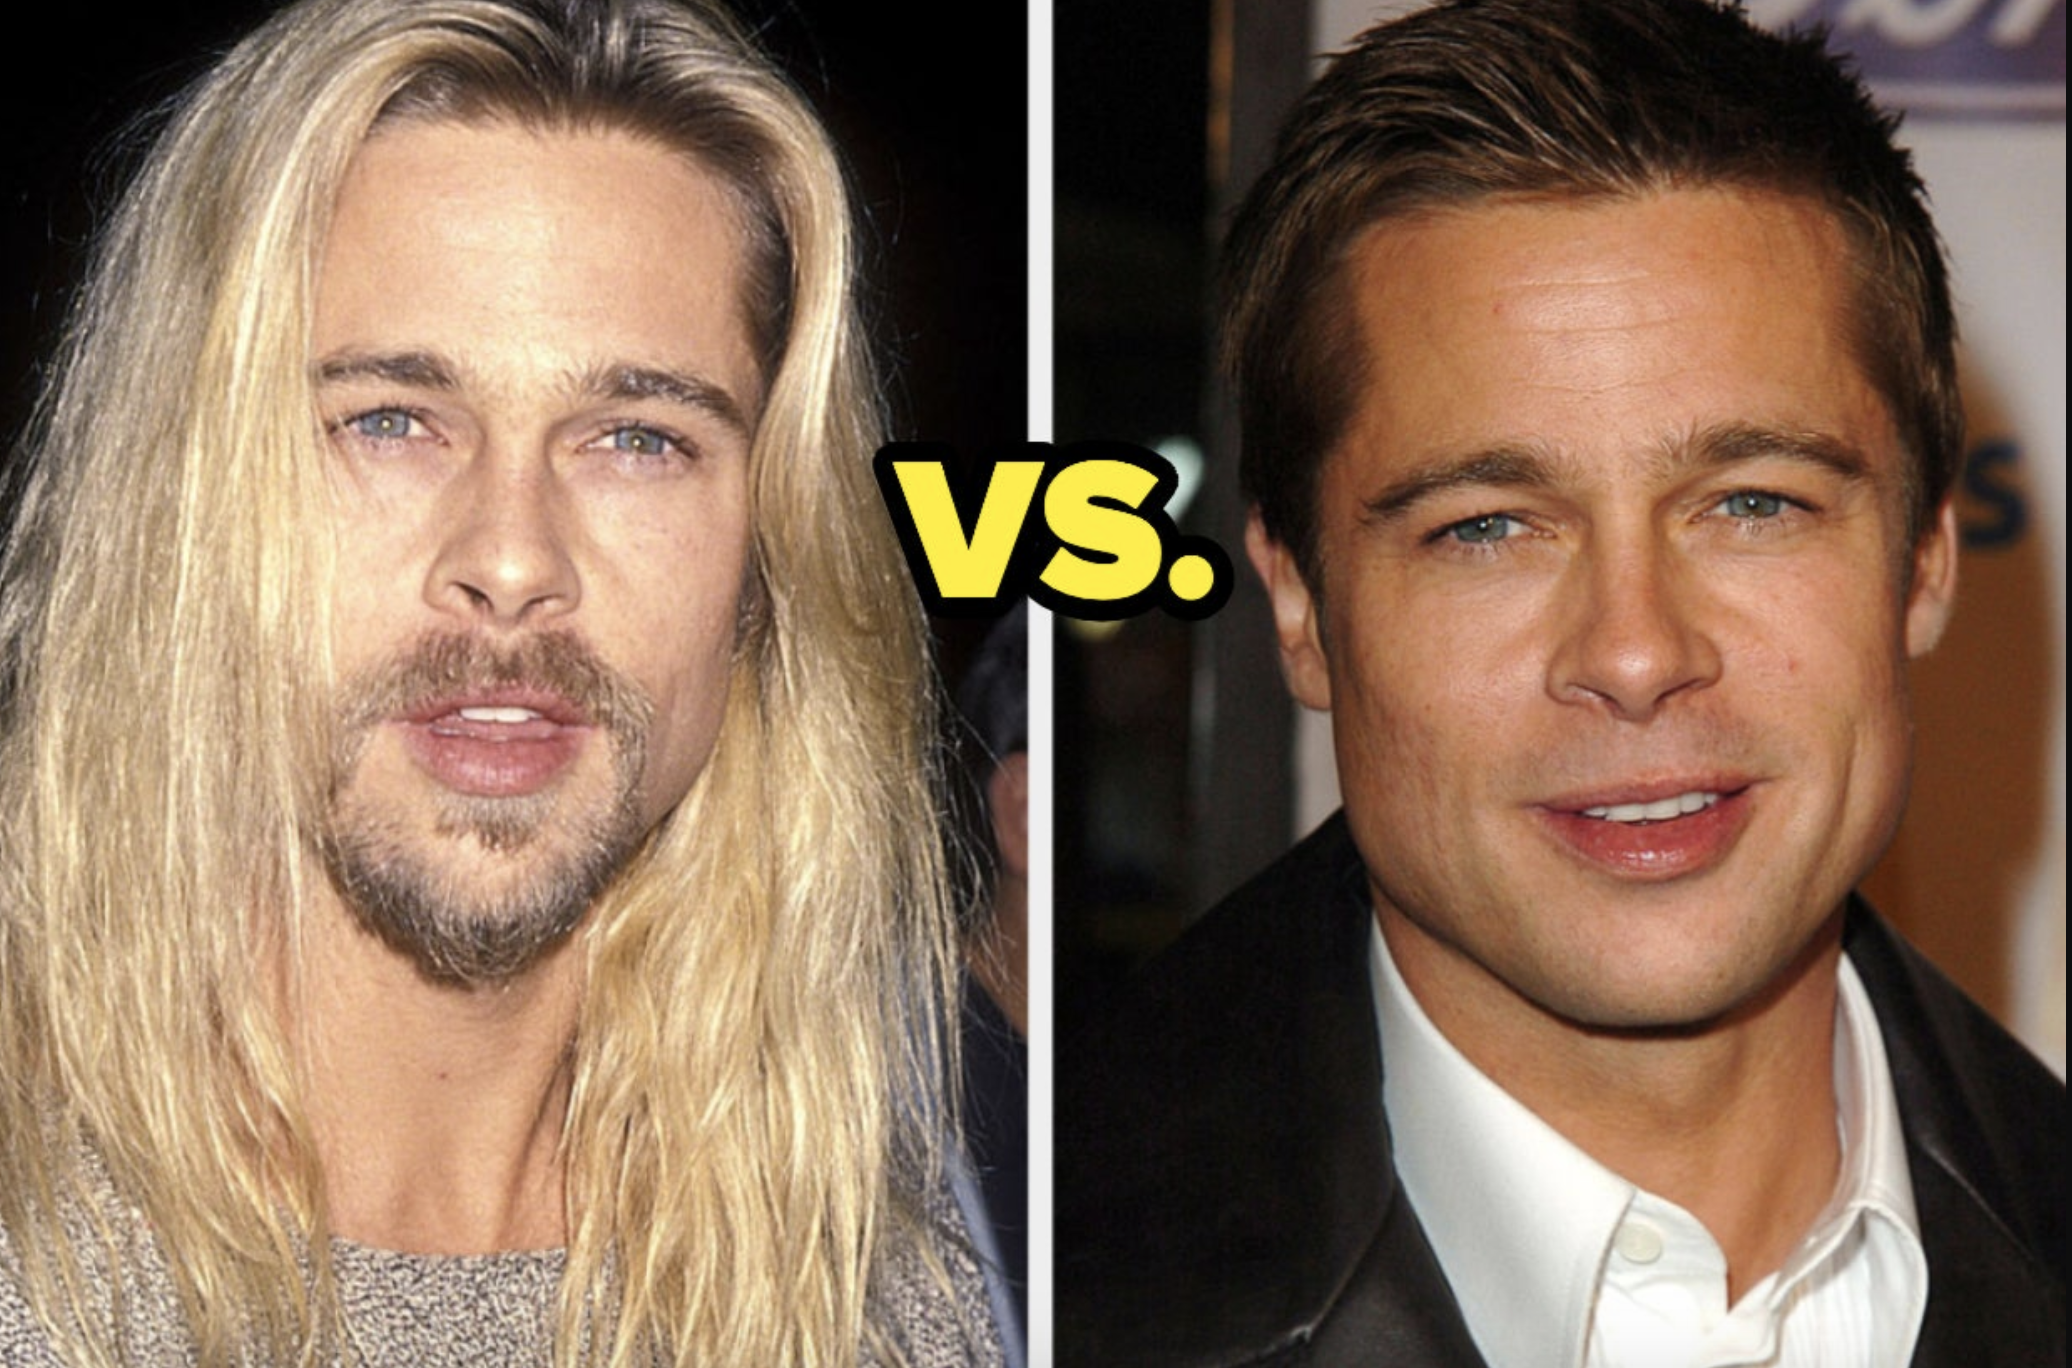 Long Hair vs Short Hair Which Is Better On Men